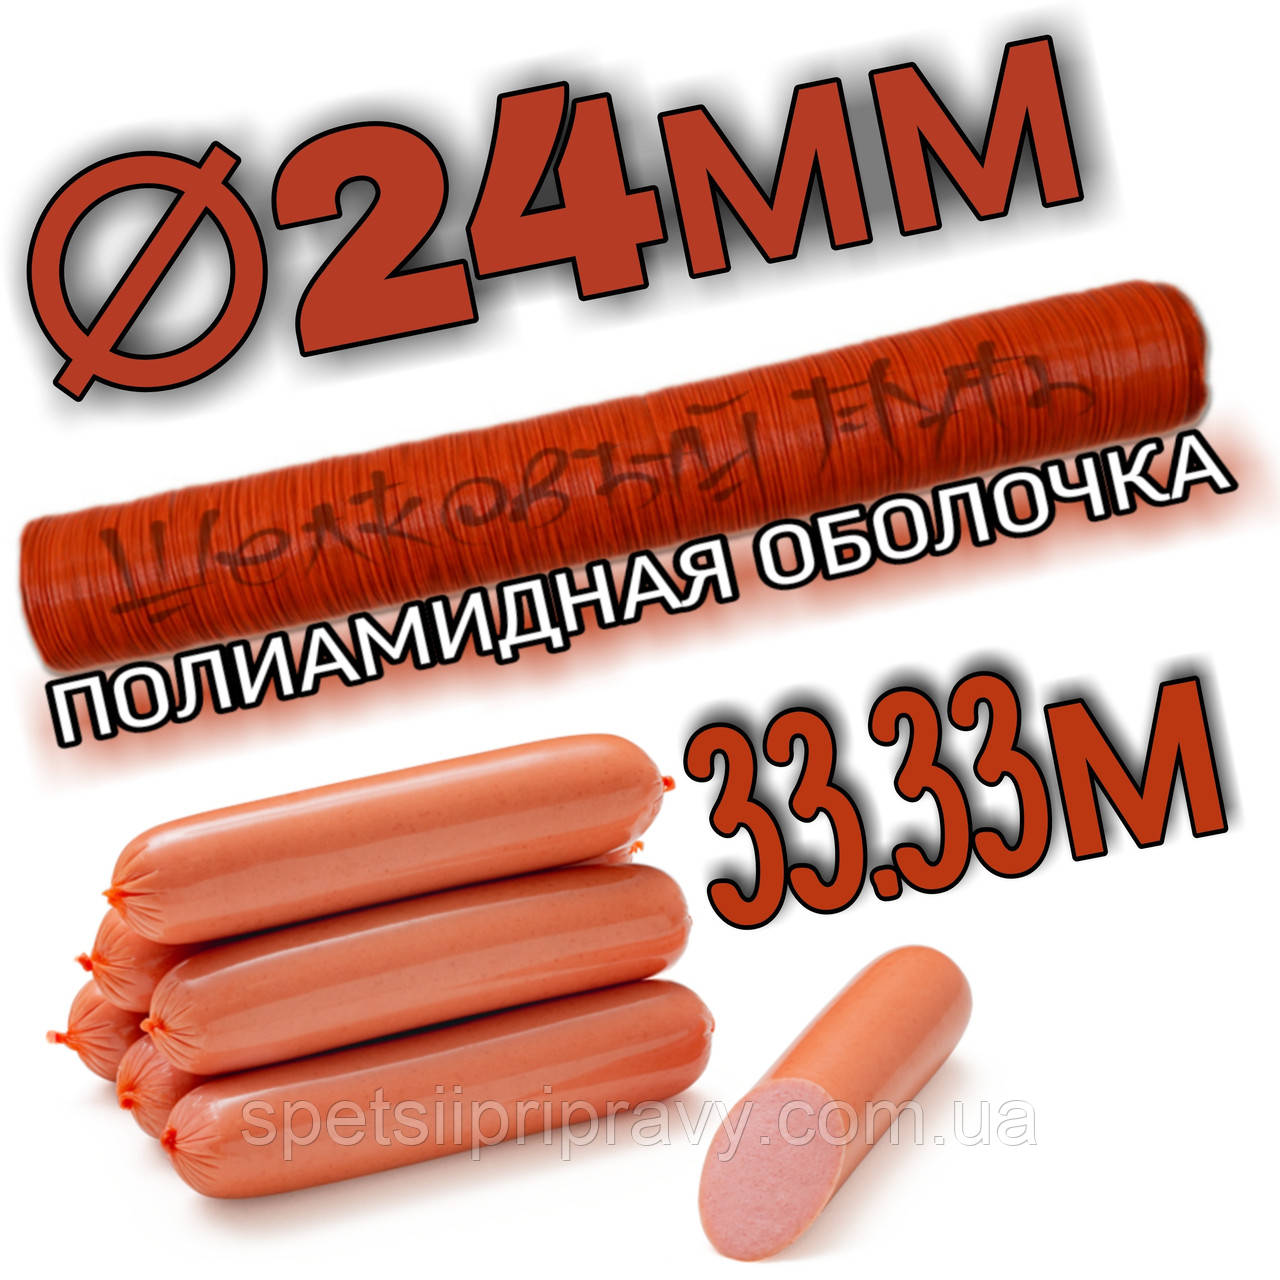 Поліамідна оболонка  ⁇  24 мм для сосисок калібр 
(Пентопак) 33.33м 🇺🇦